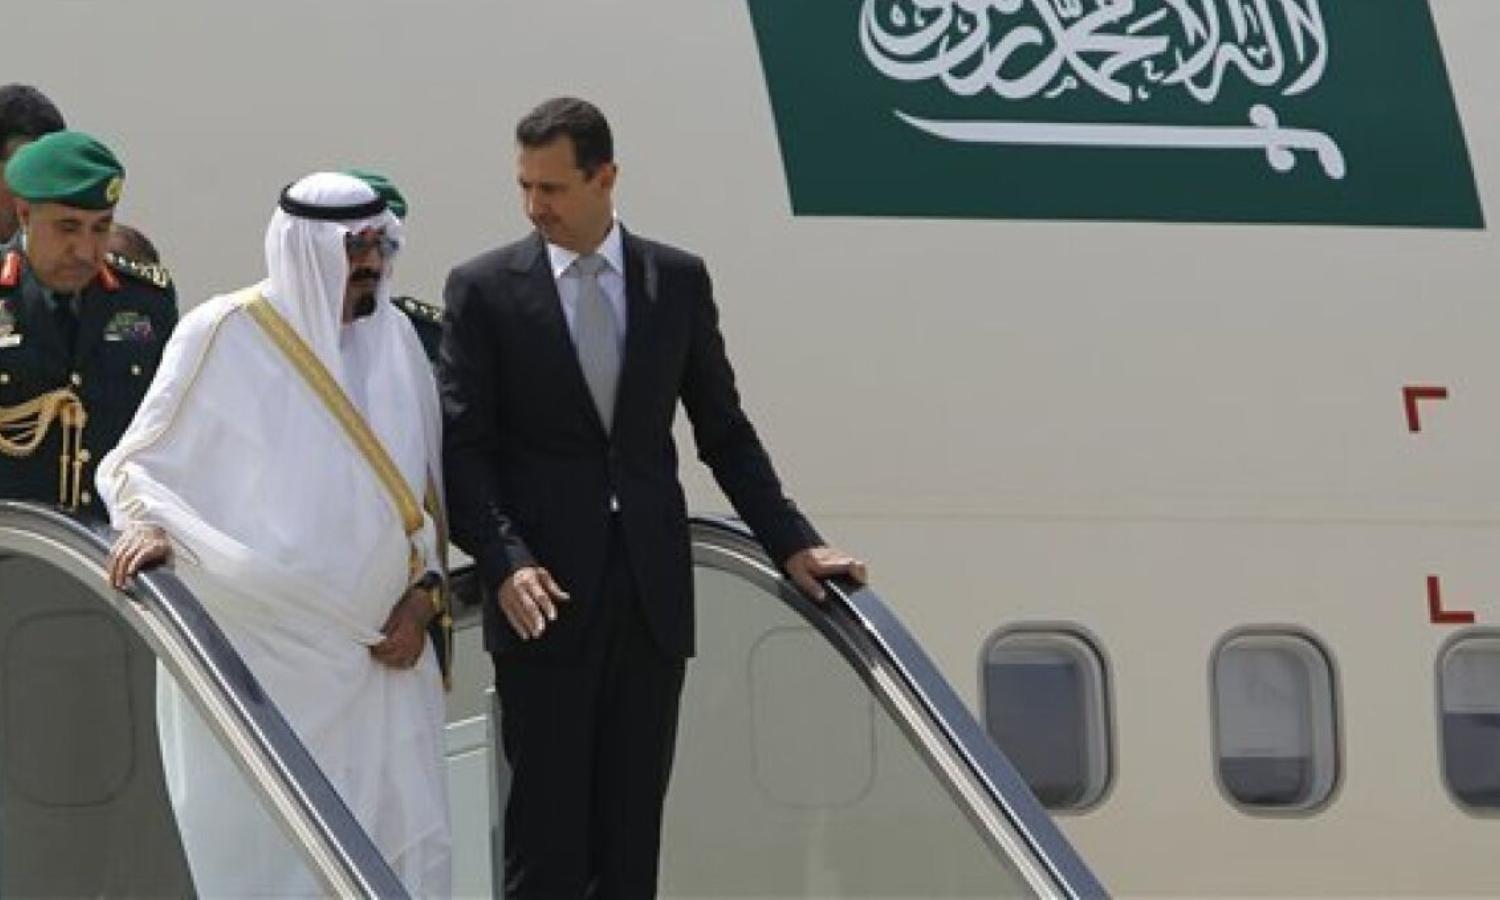 رئيس النظام السوري بشار الأسد والملك السعودي الراحل عبد الله بن عبد العزيز أثناء وصولهما للعاصمة اللبنانية بيروت 2010 (AP)